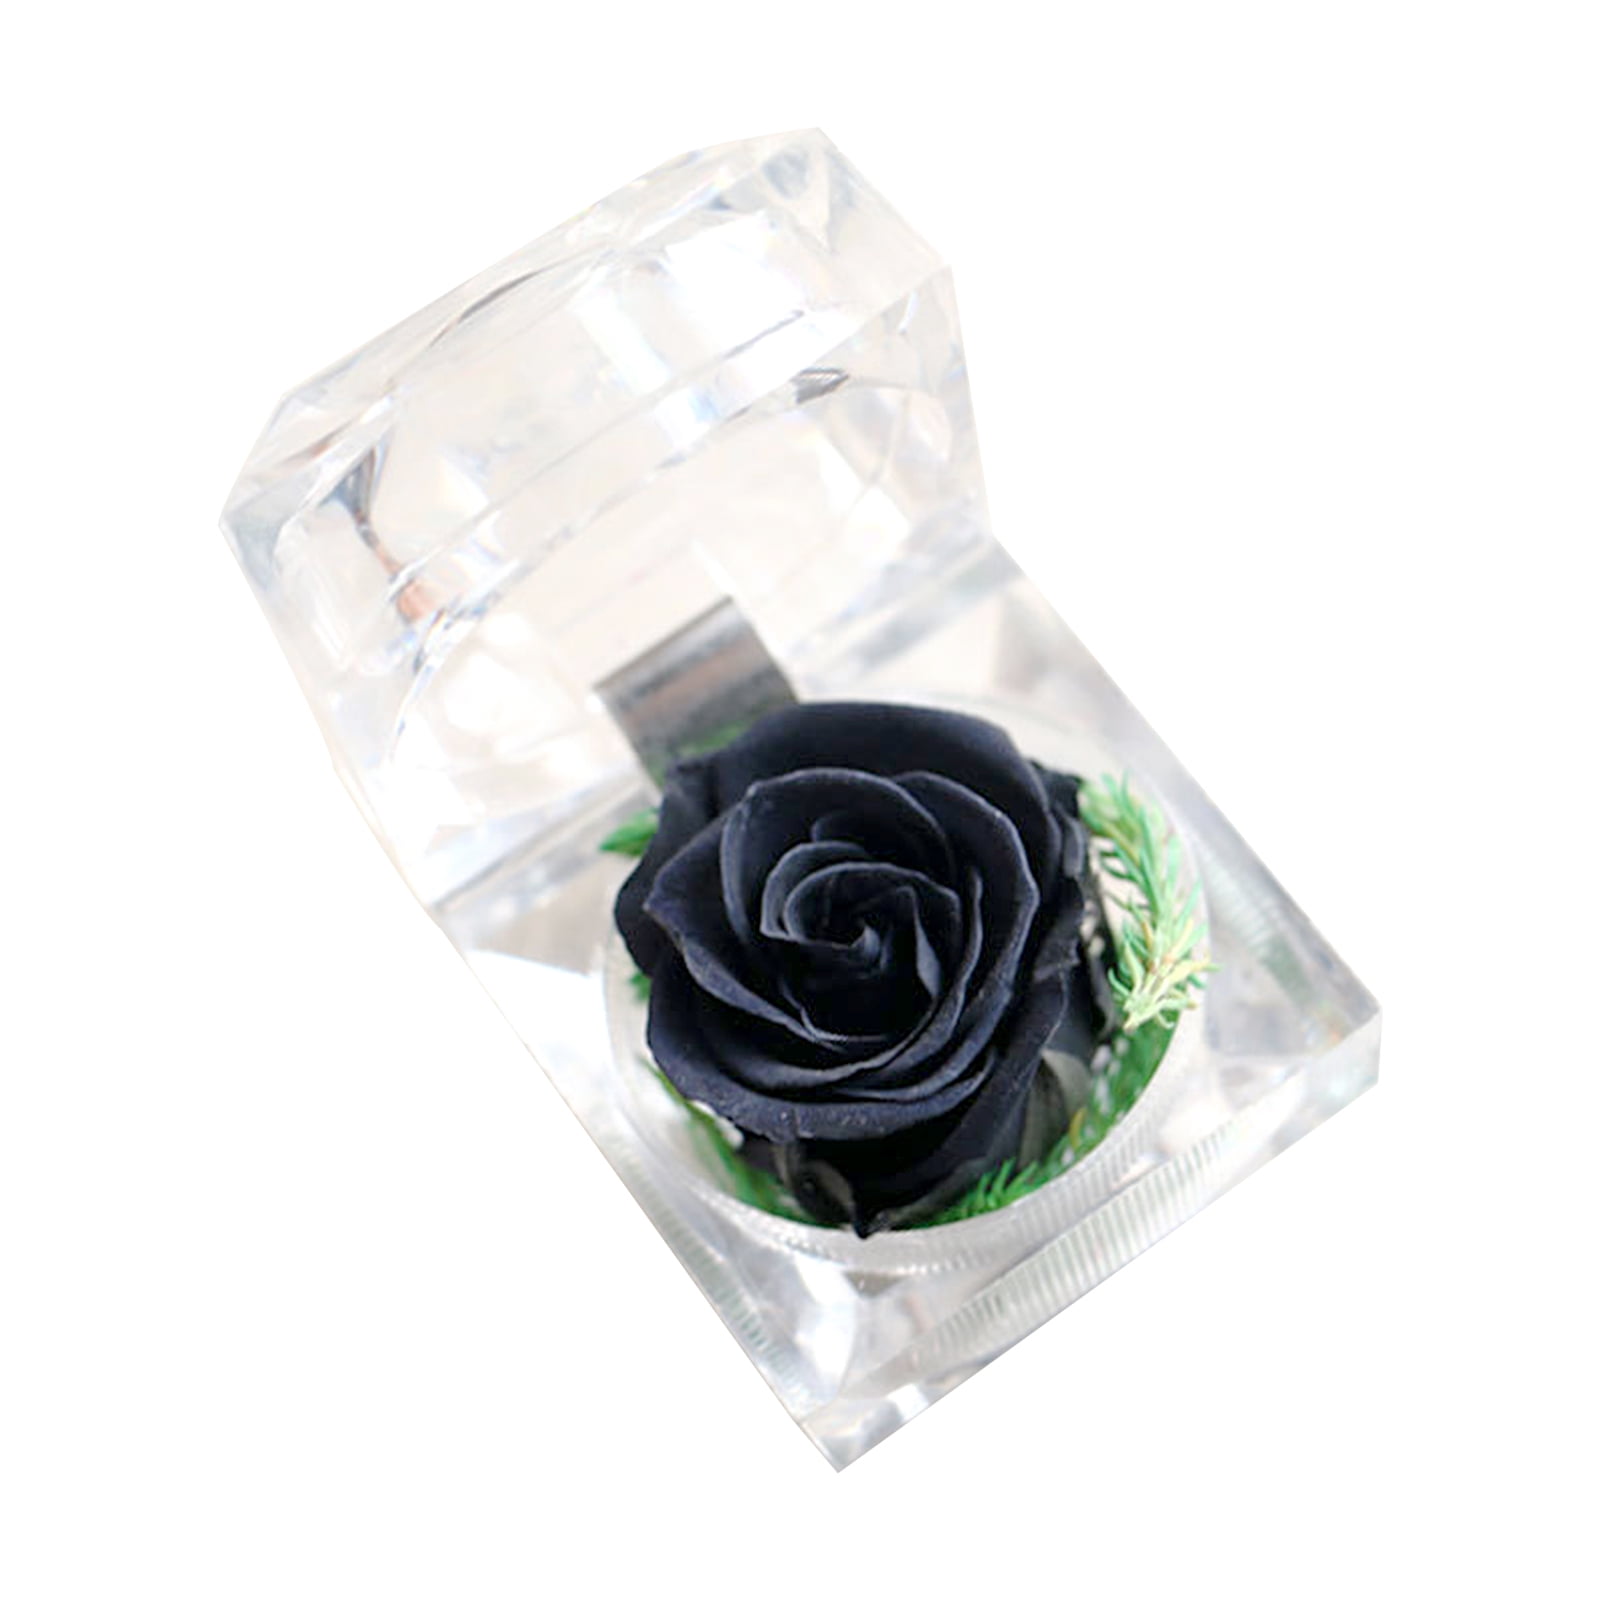 Enchanted Forever Rose Flower In Glass LED Light Wedding Festival Home Decor US 